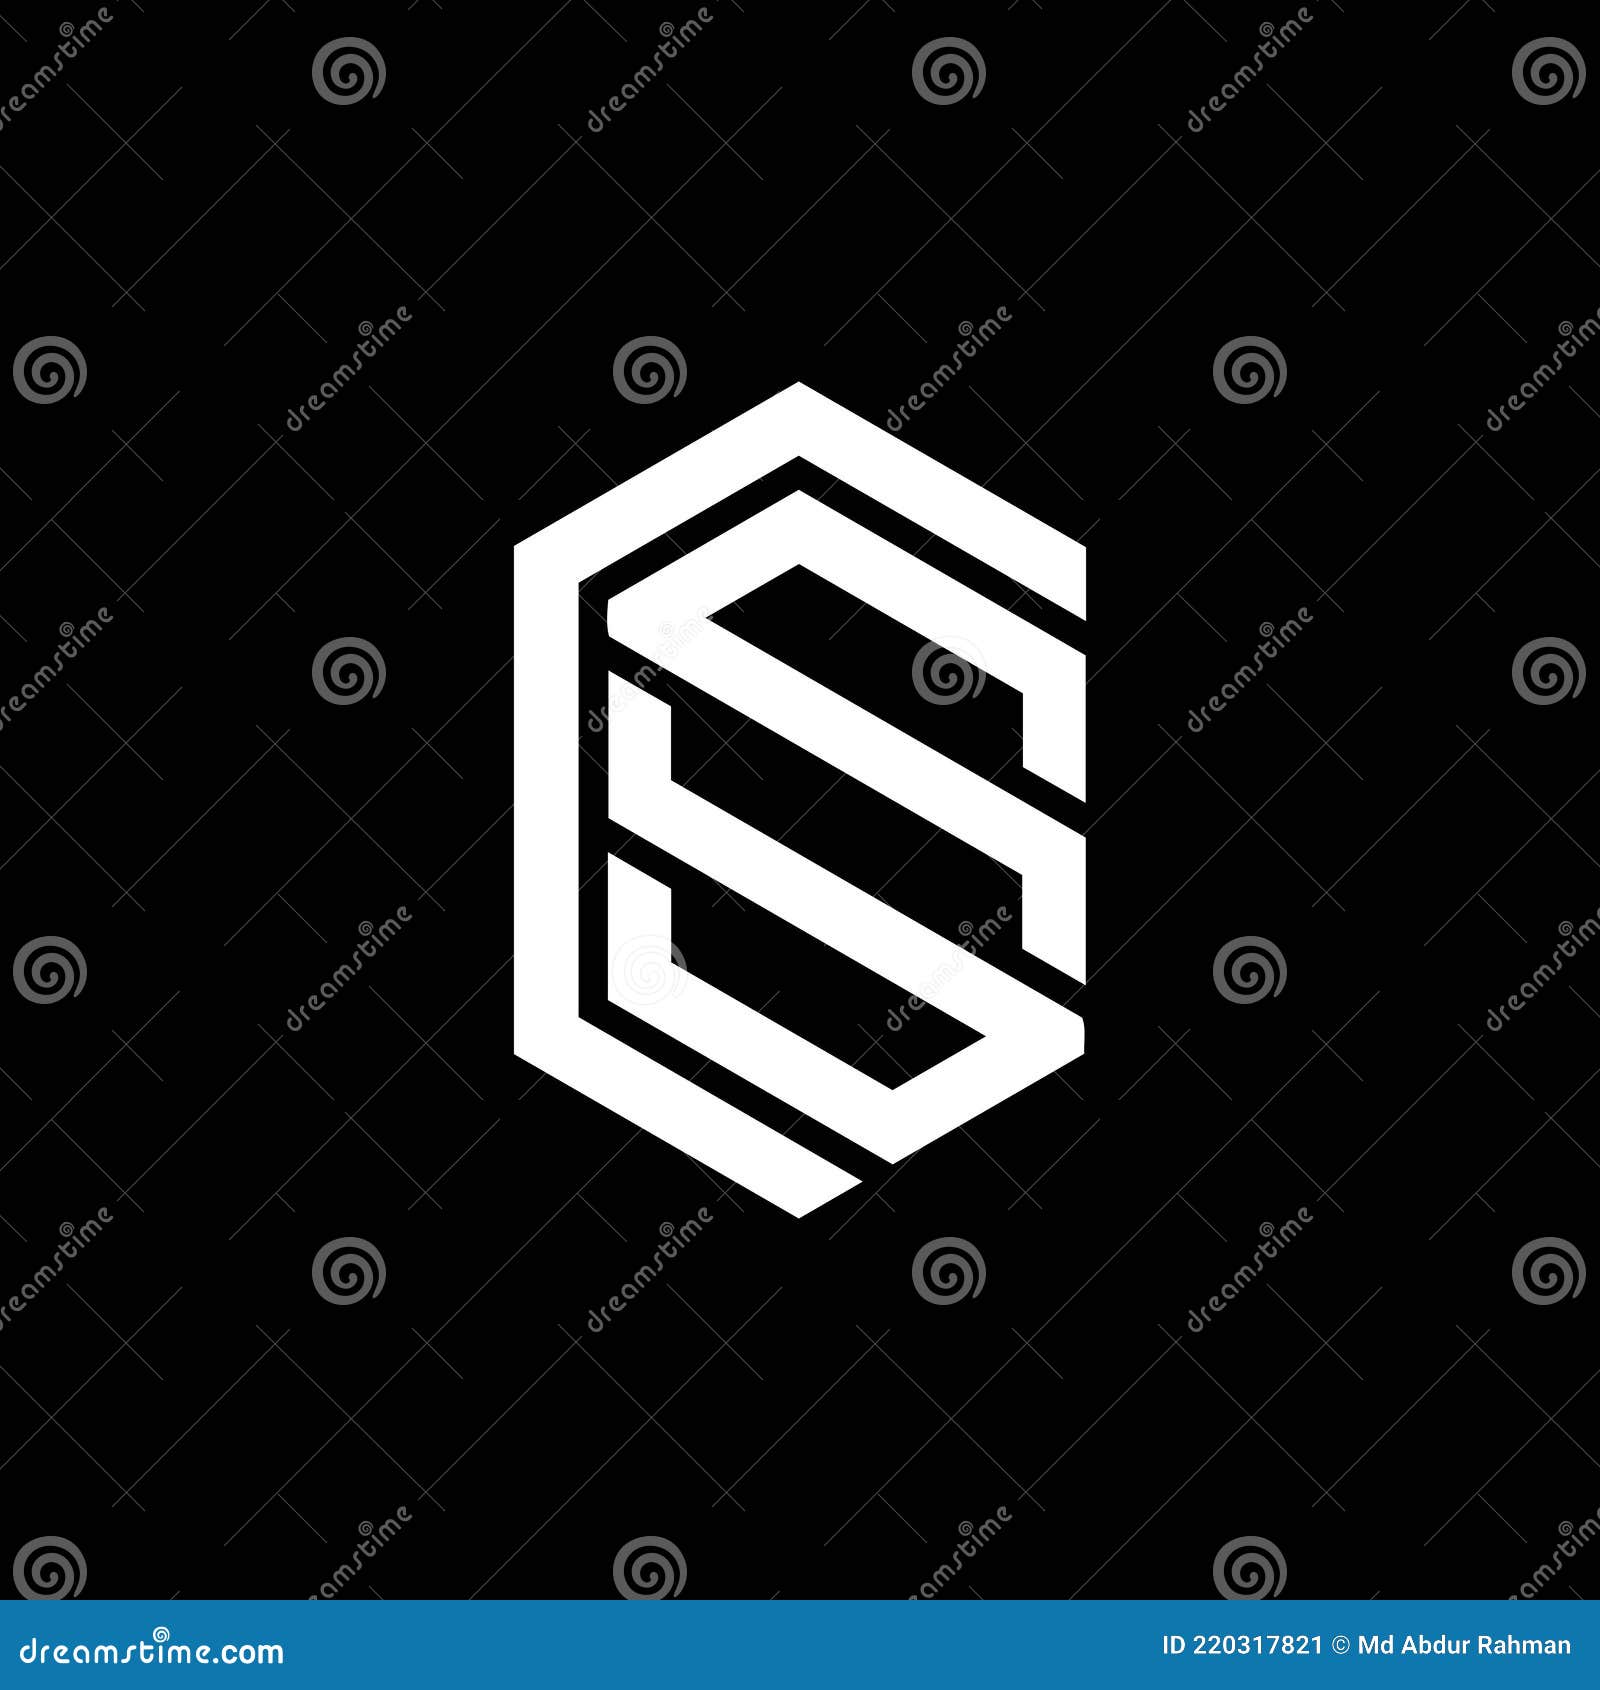 Thiết kế logo bằng CSS là cách tuyệt vời để thể hiện tính chất của thương hiệu của bạn. Xem hình ảnh liên quan để có ý tưởng thiết kế đẹp mắt và độc đáo.